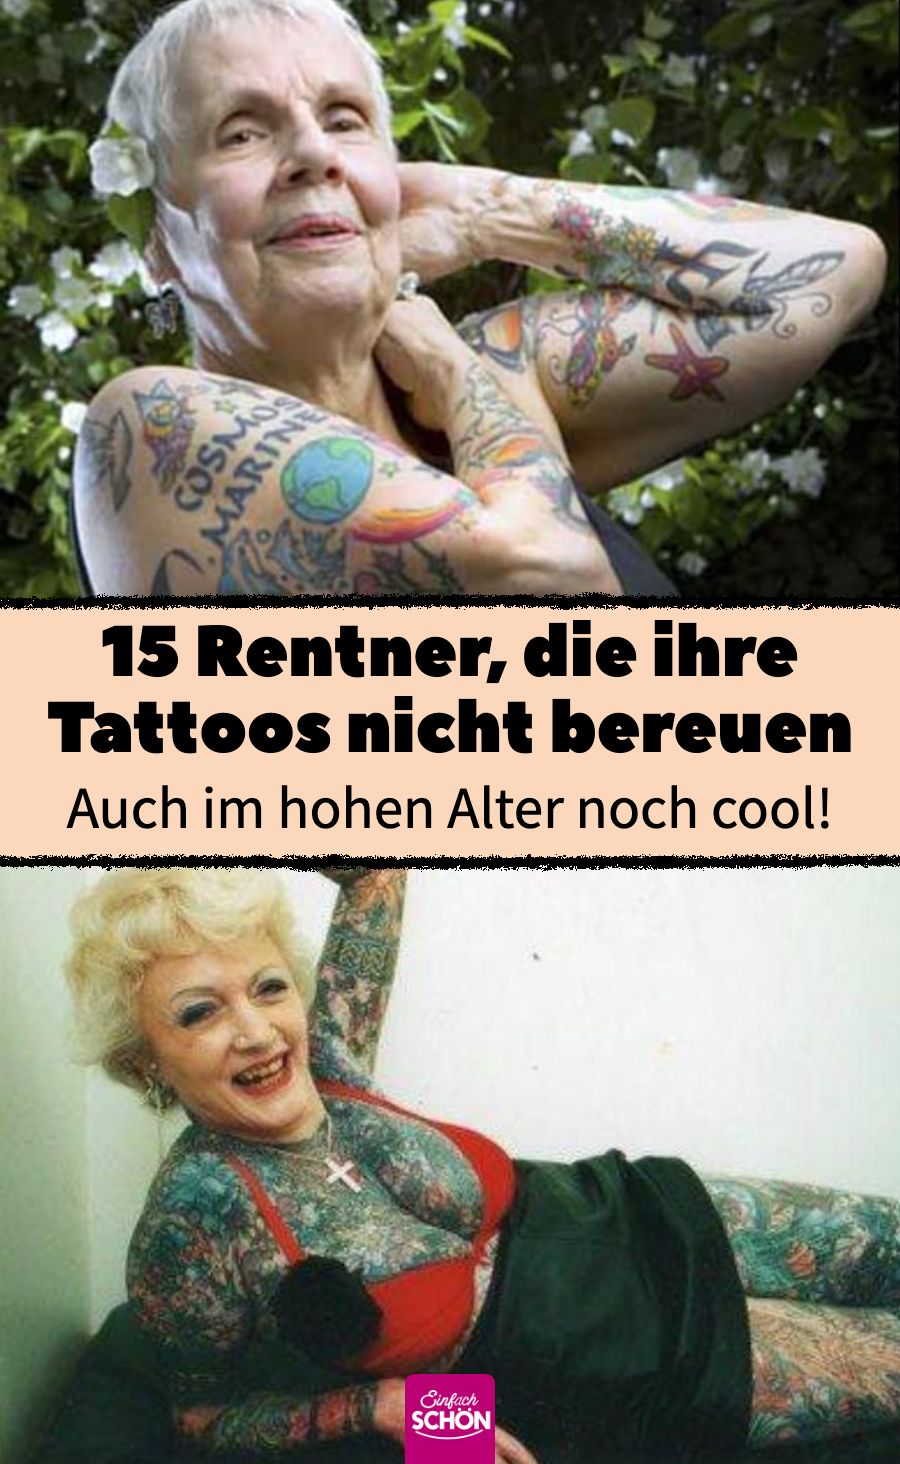 Tattoo im Alter: 15 Rentner zeigen stolz ihre Tattoos